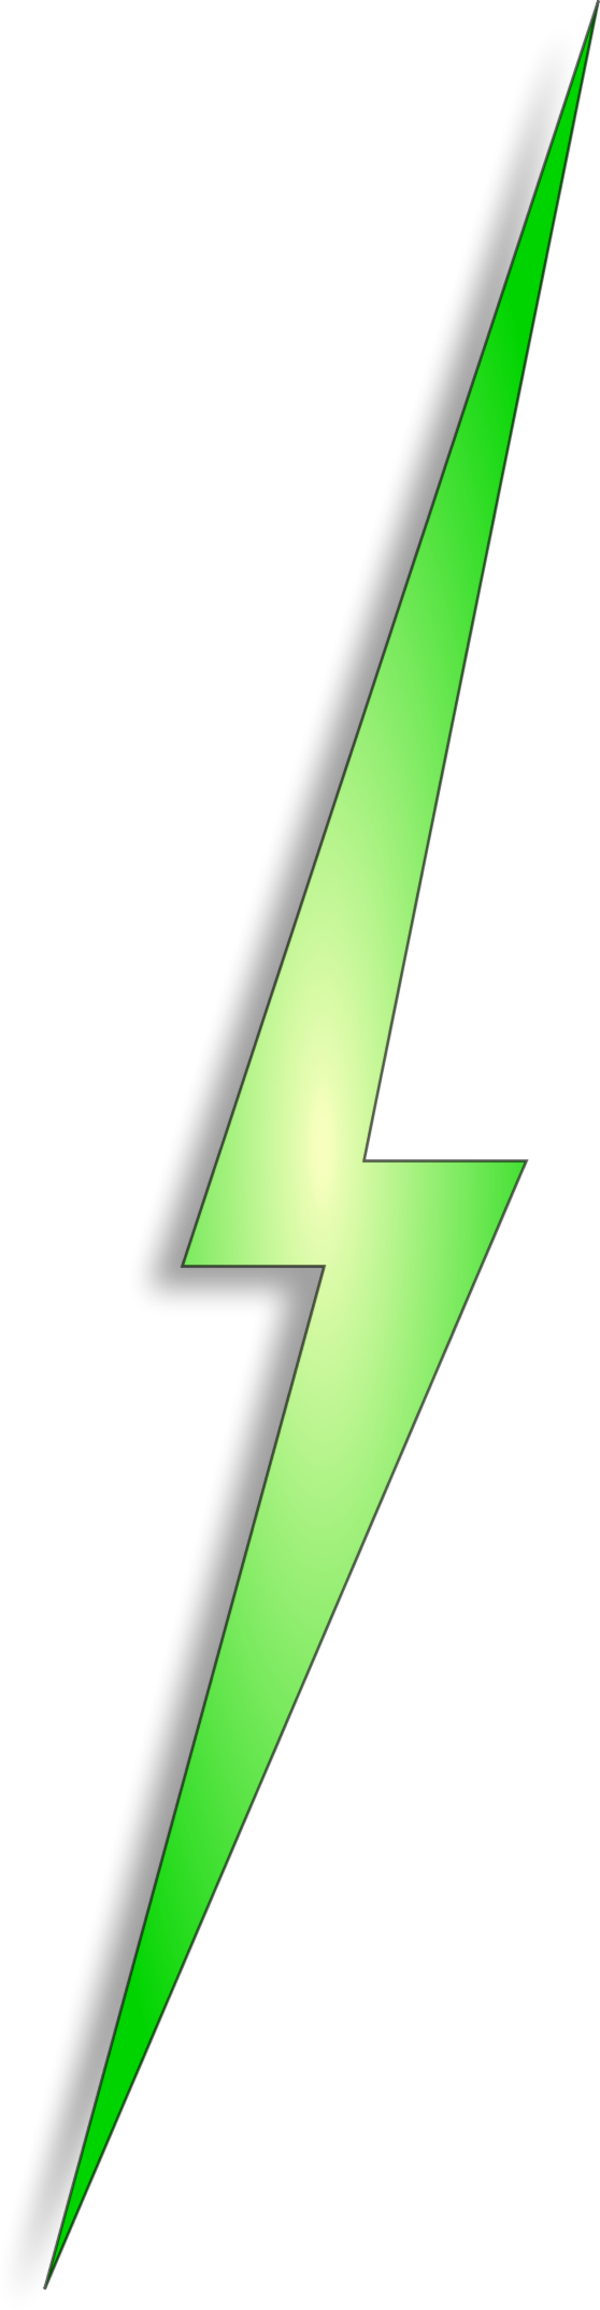 Electrical Clipart Red Lightning Bolt - Green Lightning Bolt Transparent (600x2310), Png Download